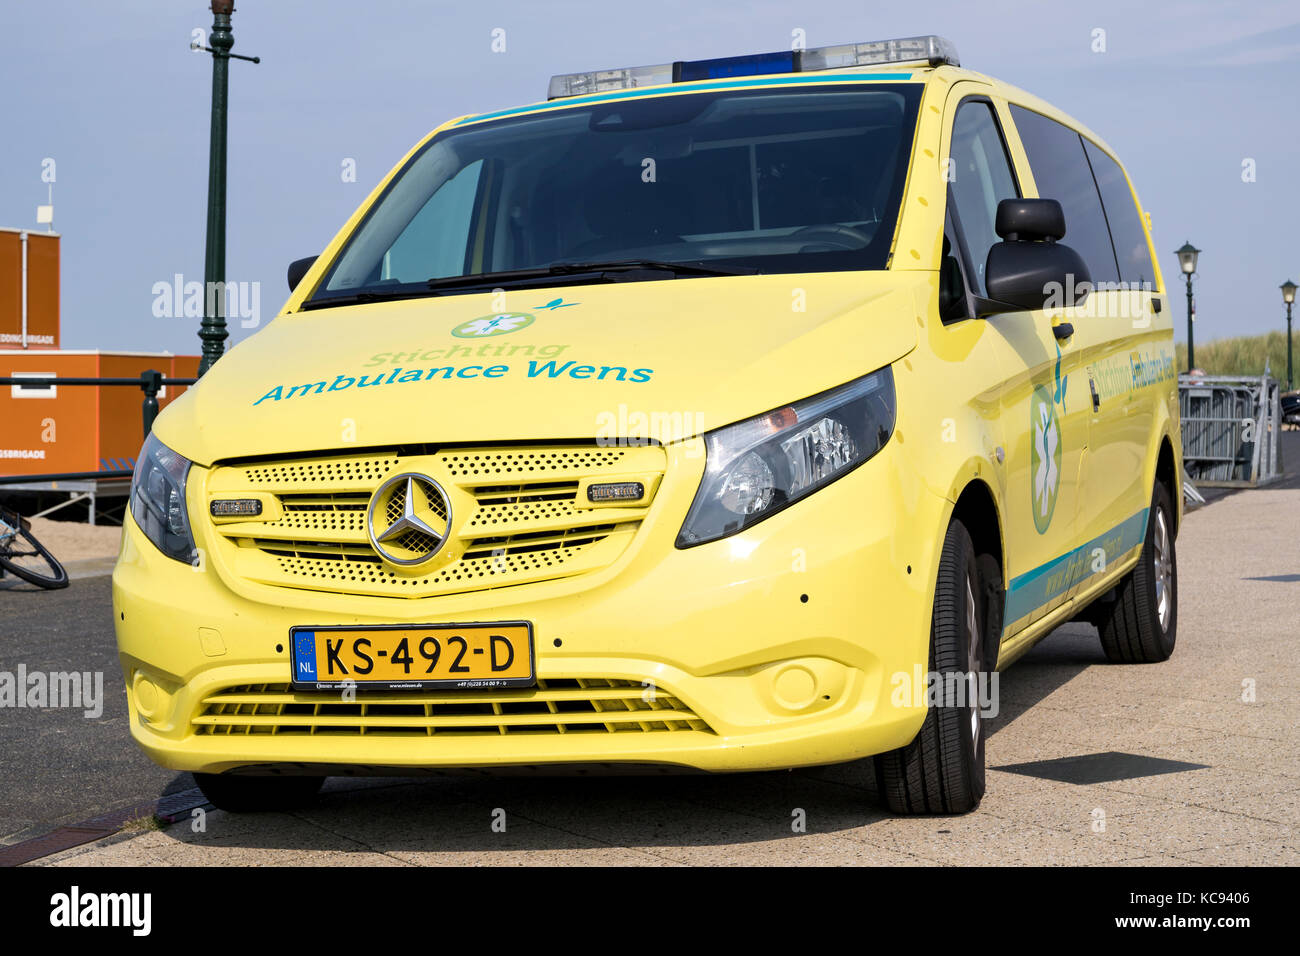 Ambulance van Der stichting Krankenwagen wens (letzter Wunsch Stiftung) am Boulevard von Scheveningen, Niederlande Stockfoto